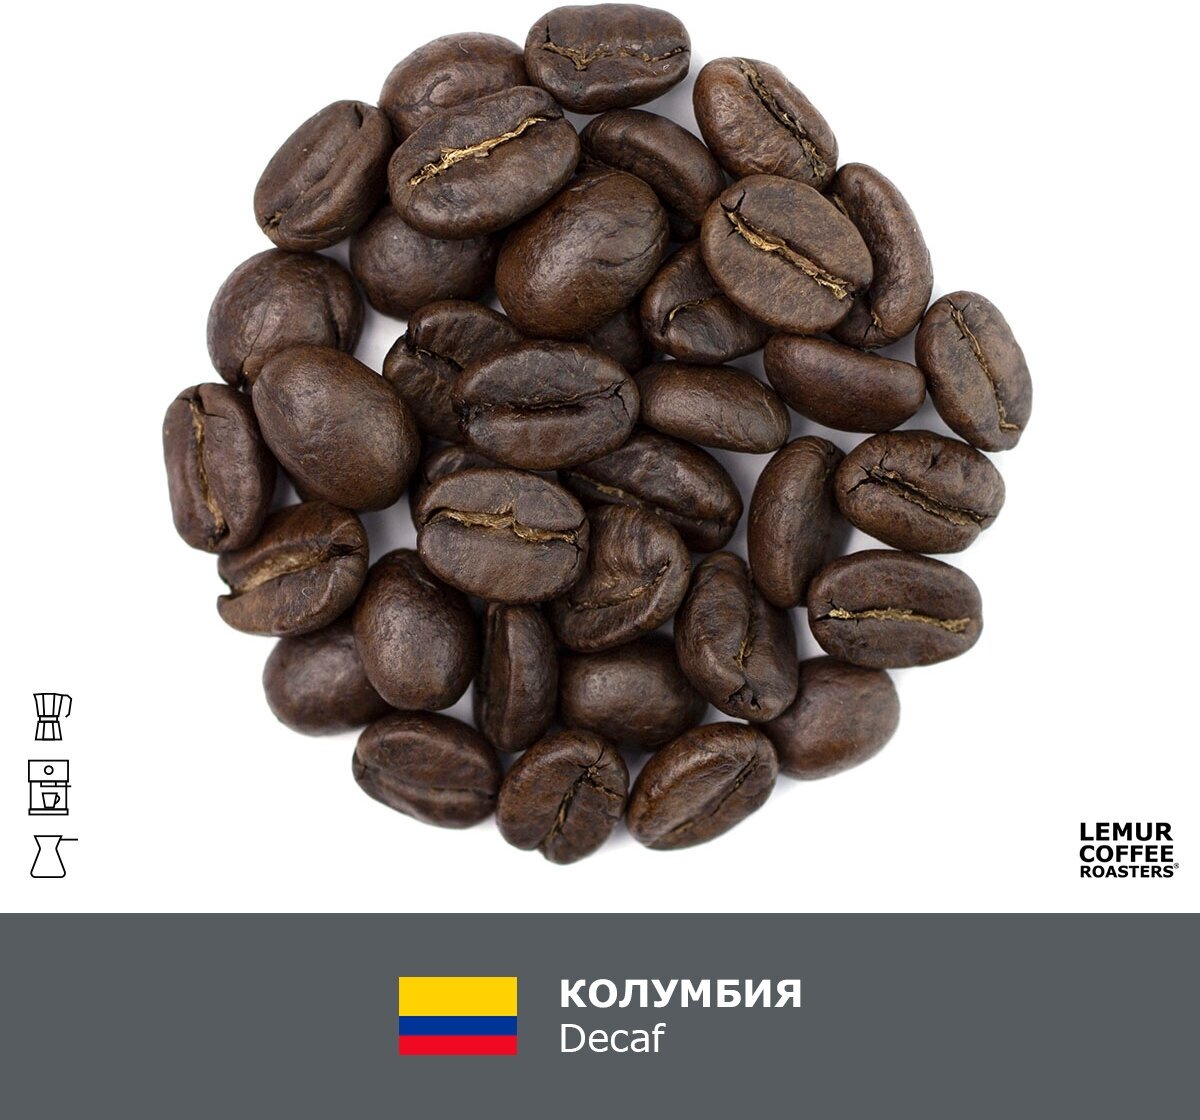 Свежеобжаренный кофе в зернах Колумбия Decaf Эспрессо Lemur Coffee Roasters, 250 г - фотография № 2